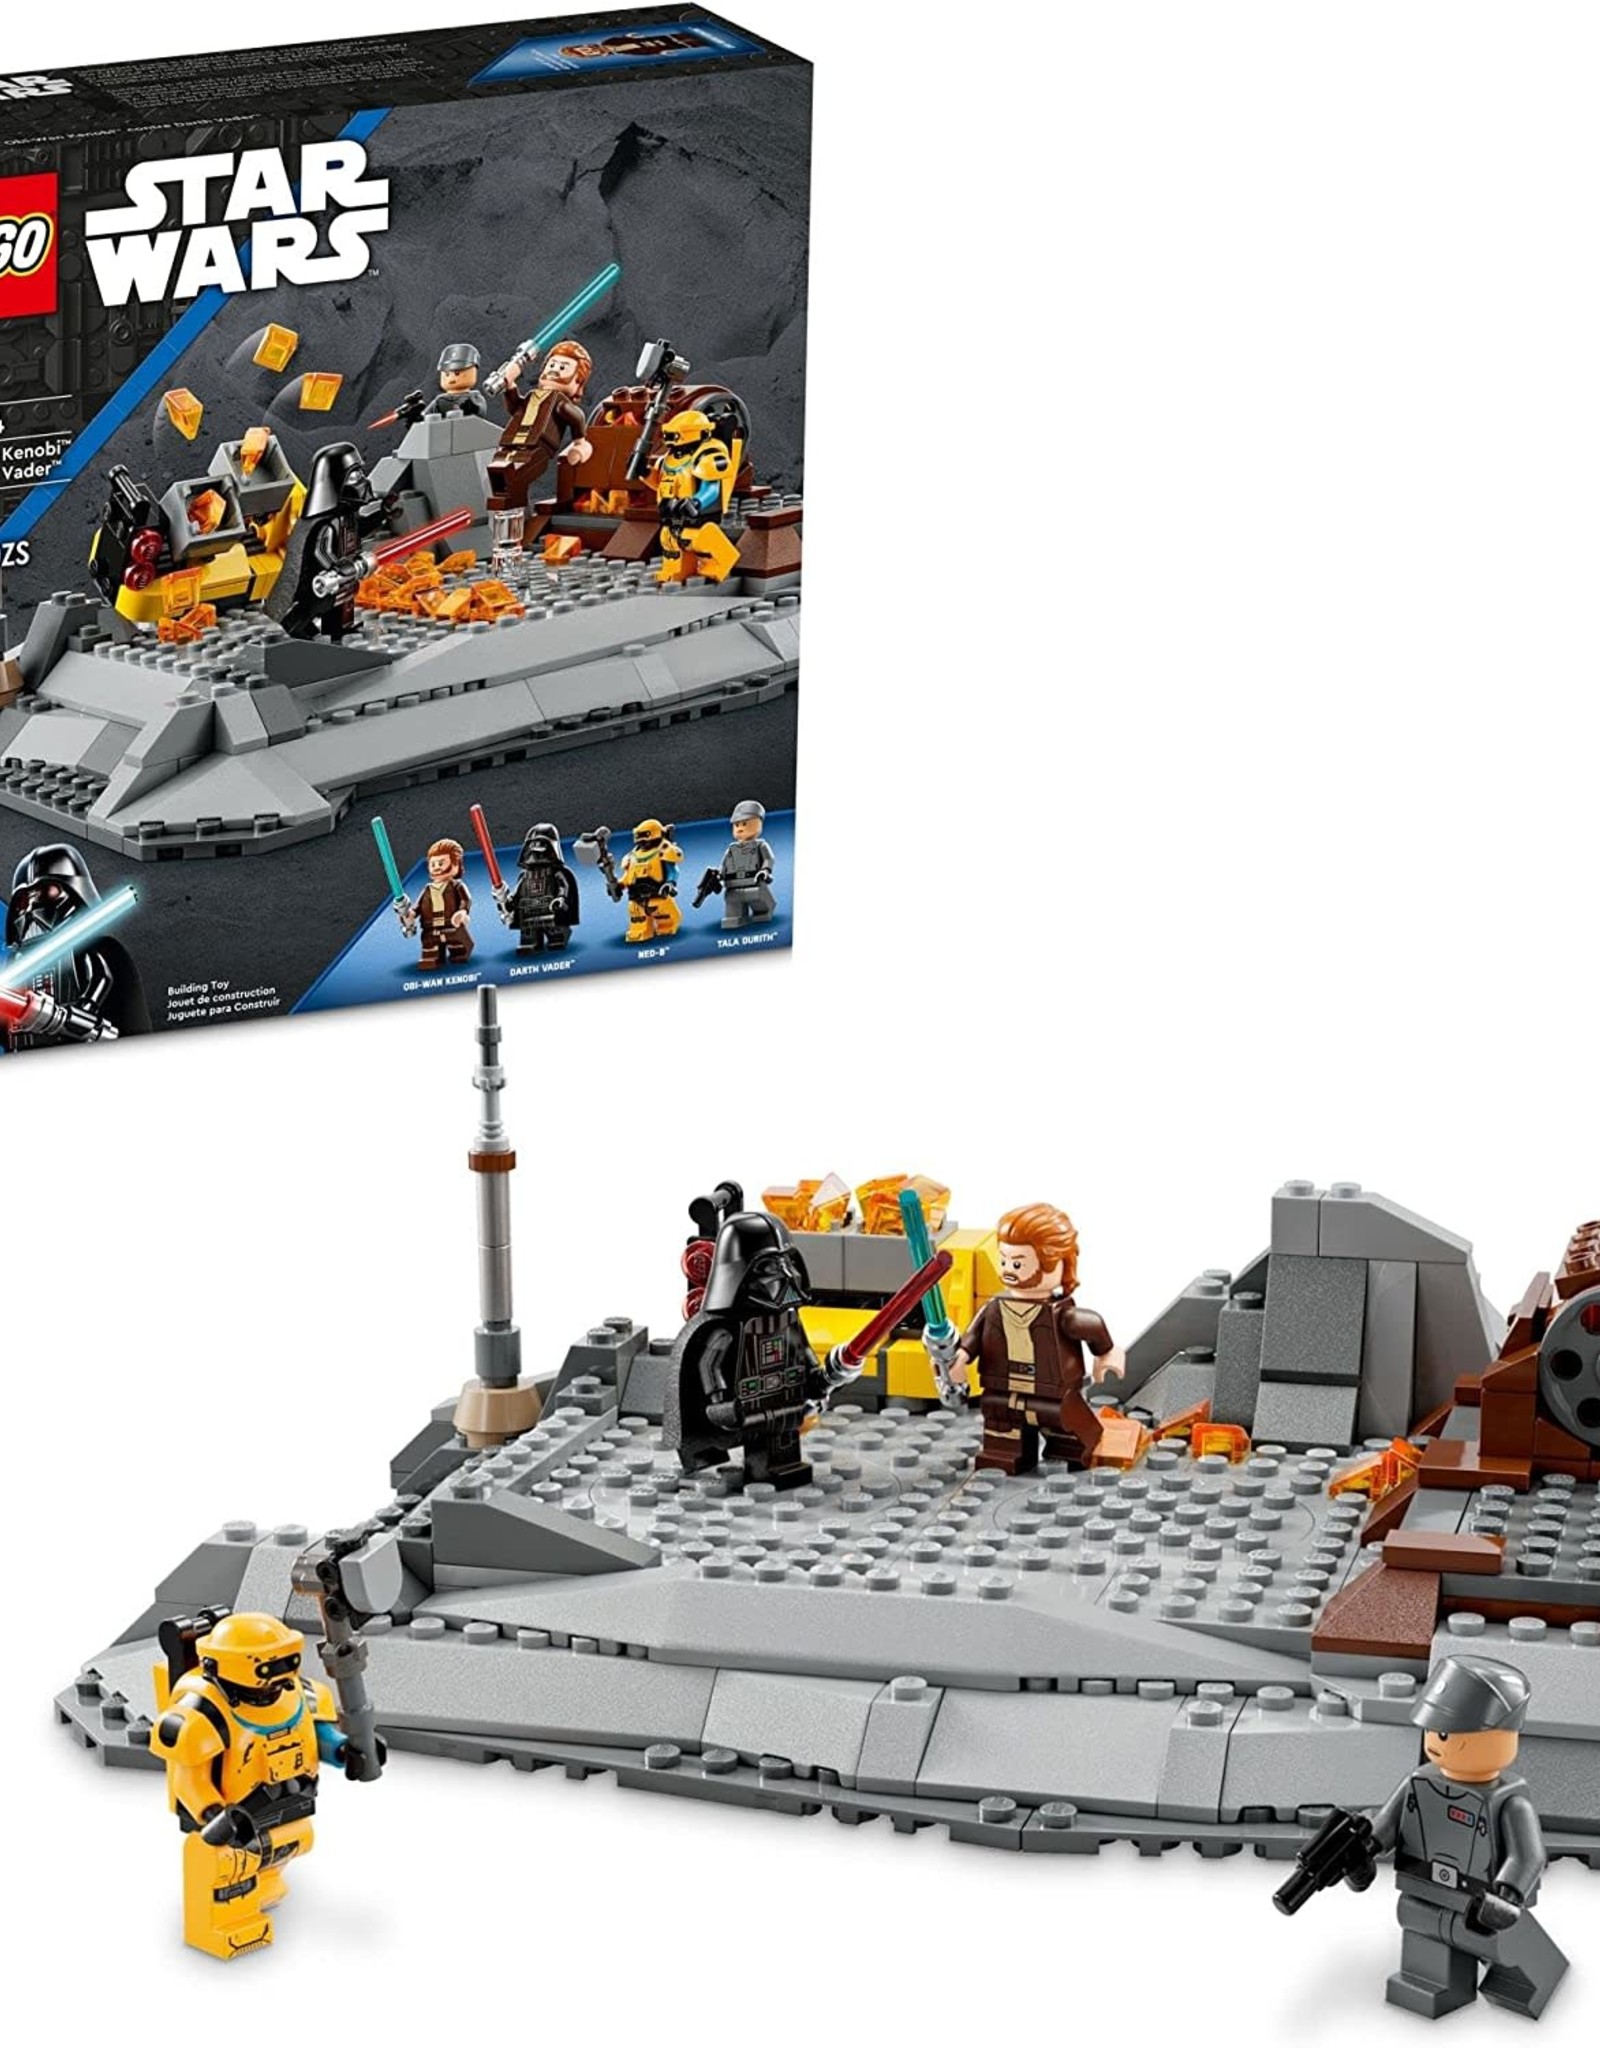 LEGO Lego Star Wars Obi-Wan Kenobi vs Darth Vader